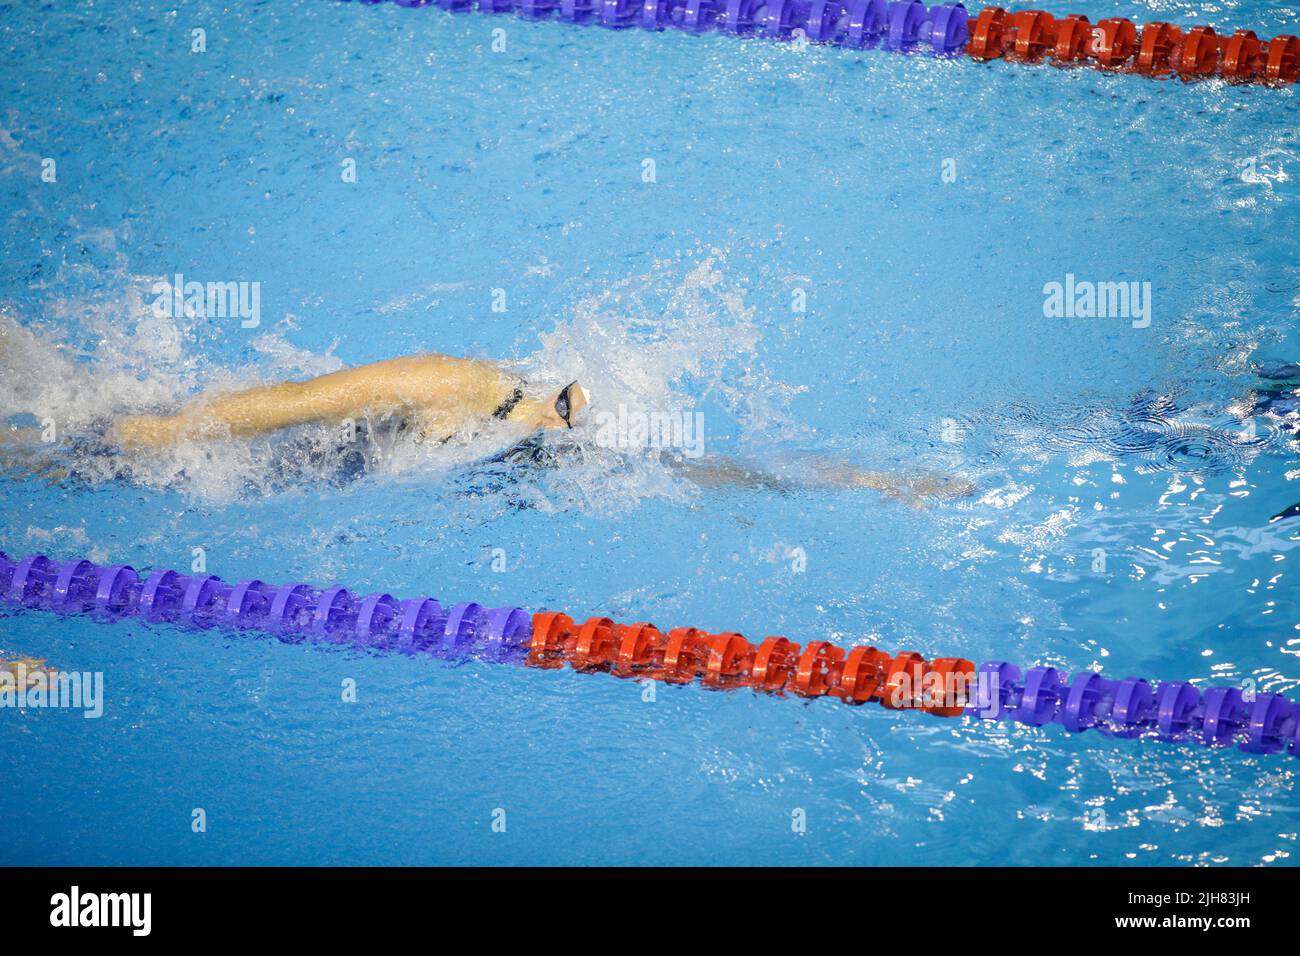 Dettagli con una atleta professionista nuoto in una piscina olimpionica. Foto Stock